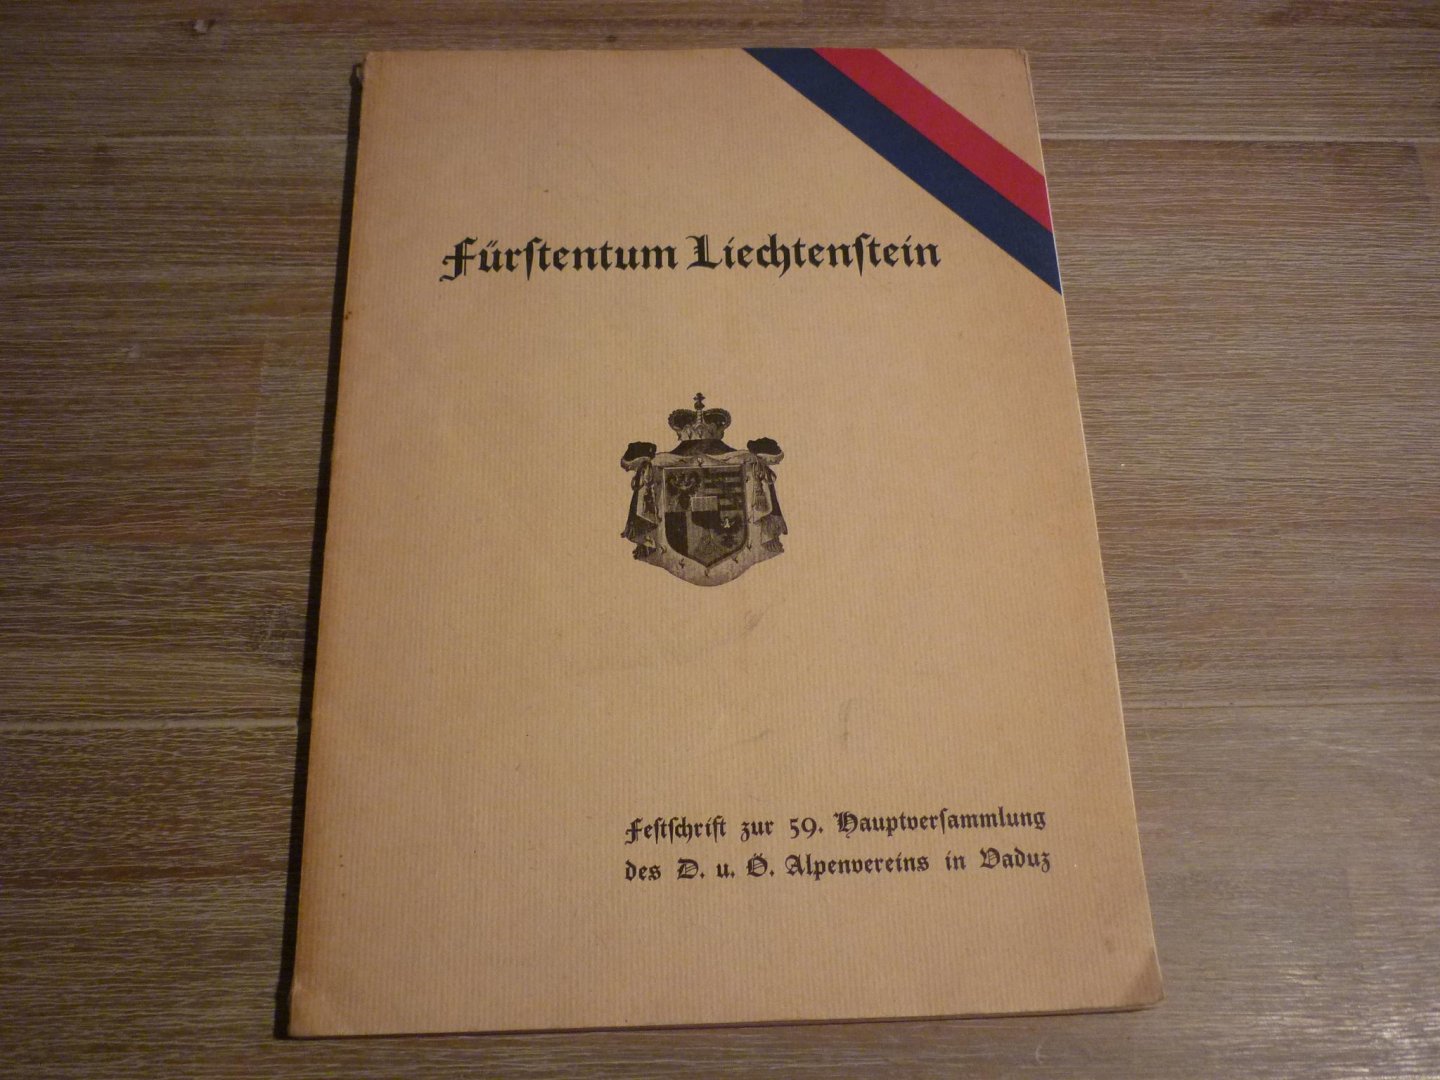 Hoop; Reg. Chef Dr. - Das Fürstentum Liechtenstein zur 59. hauptversammlung des D. u. D. U. in Vaduz; 22. bis 24. september 1933